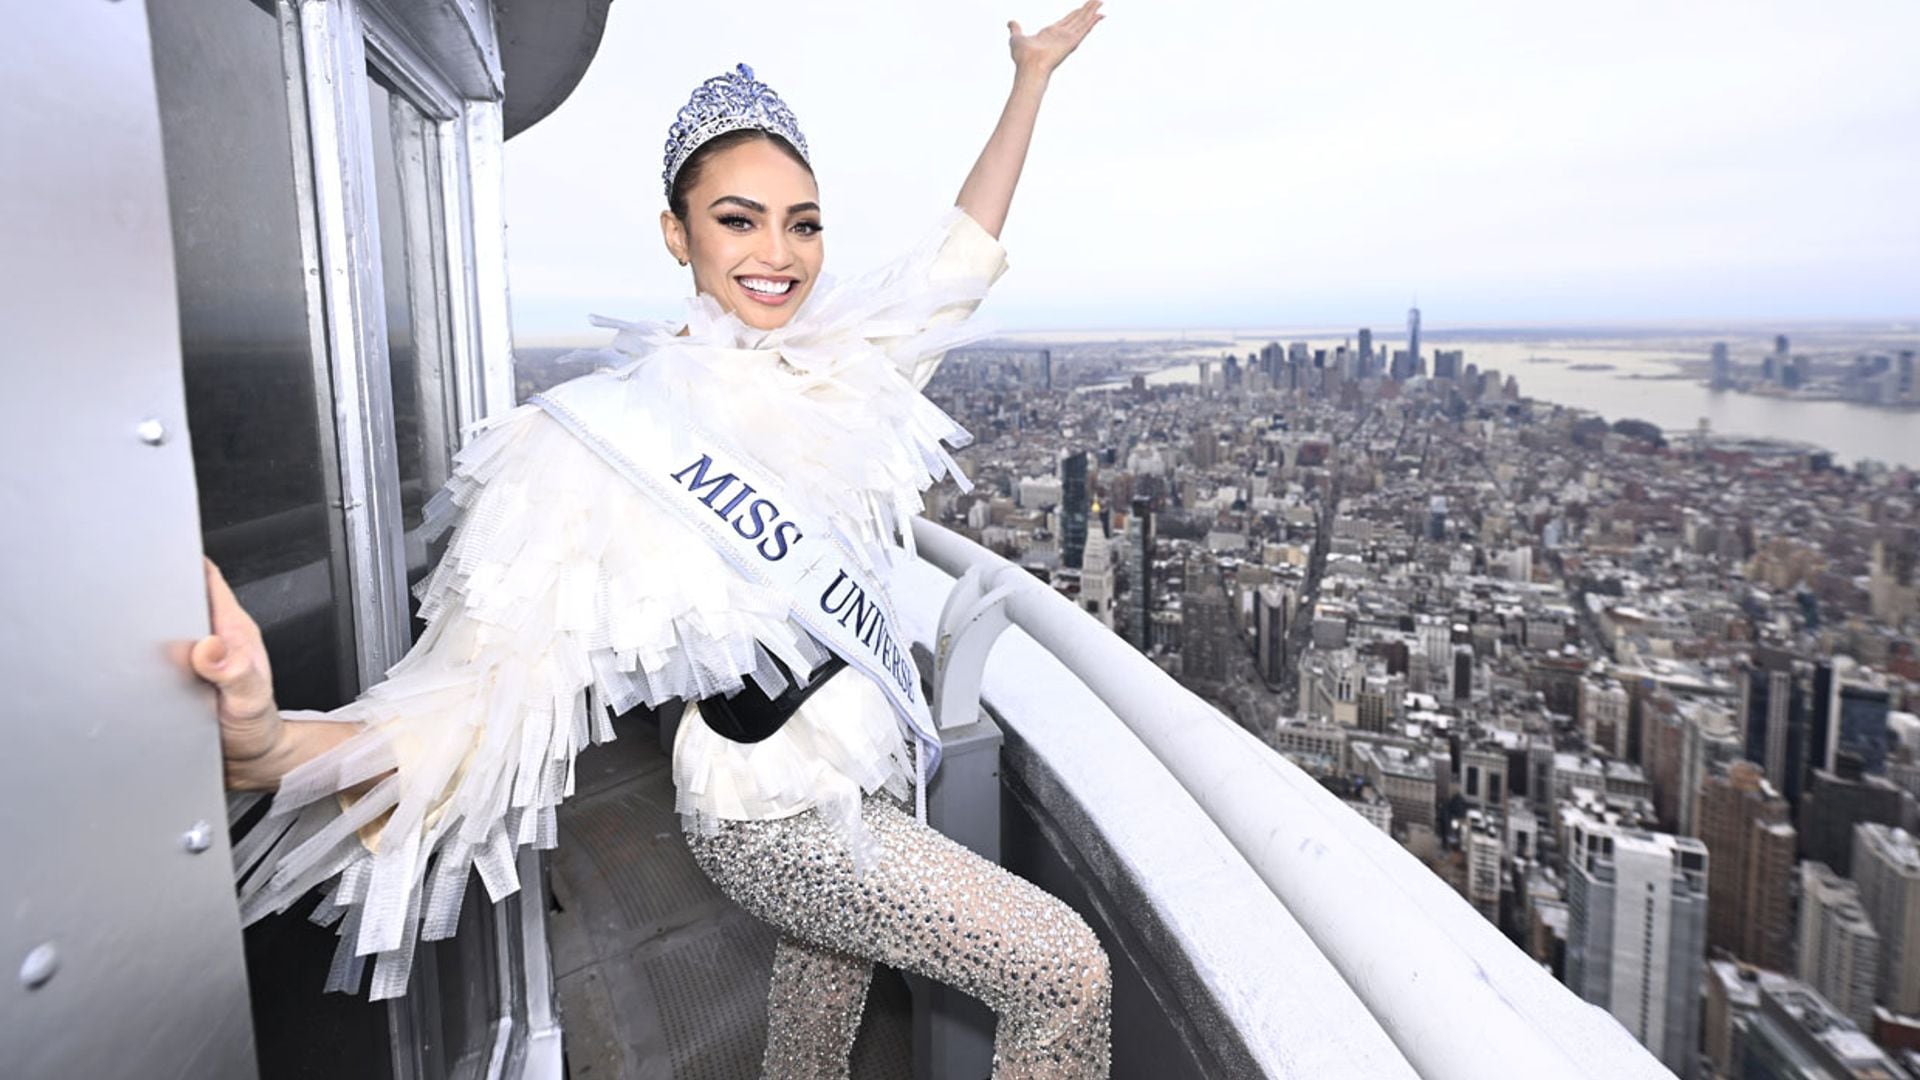 R’Bonney Gabriel, la nueva Miss Universo, corona el Empire State tras su polémica elección